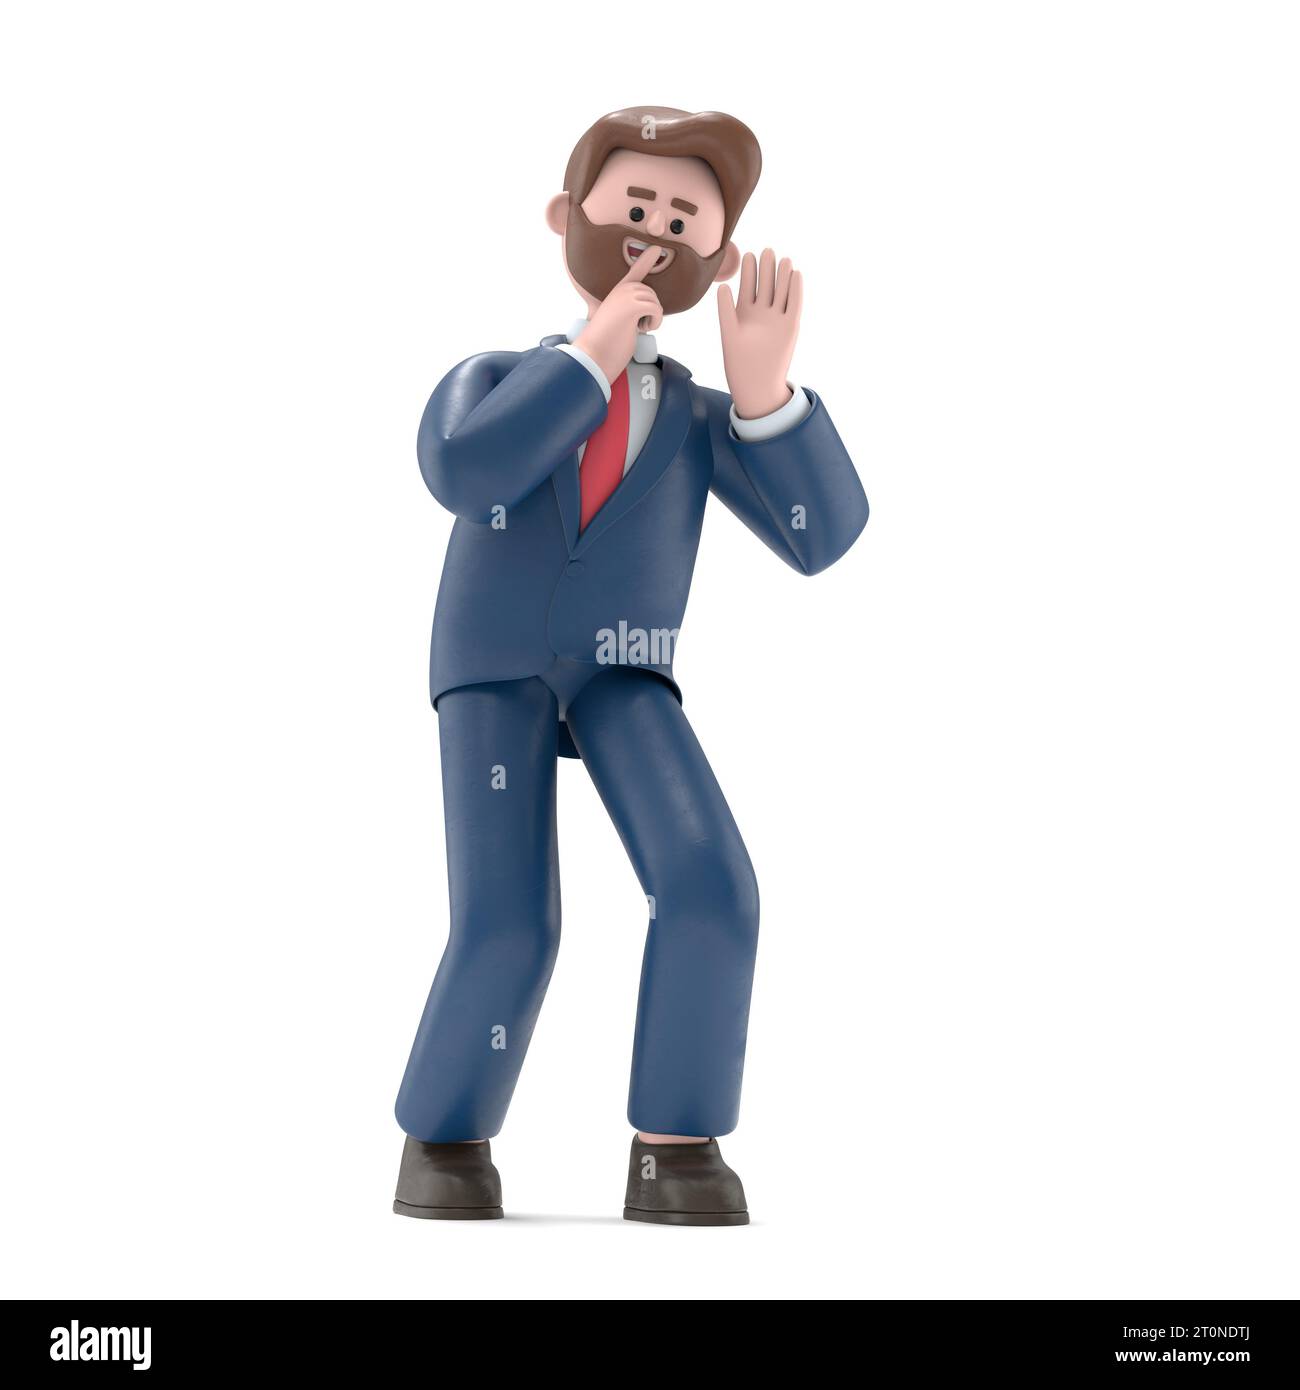 Illustration 3D de l'homme d'affaires américain Bob dans une posture d'espionnage. Image 3d.rendu 3D sur fond blanc. Banque D'Images